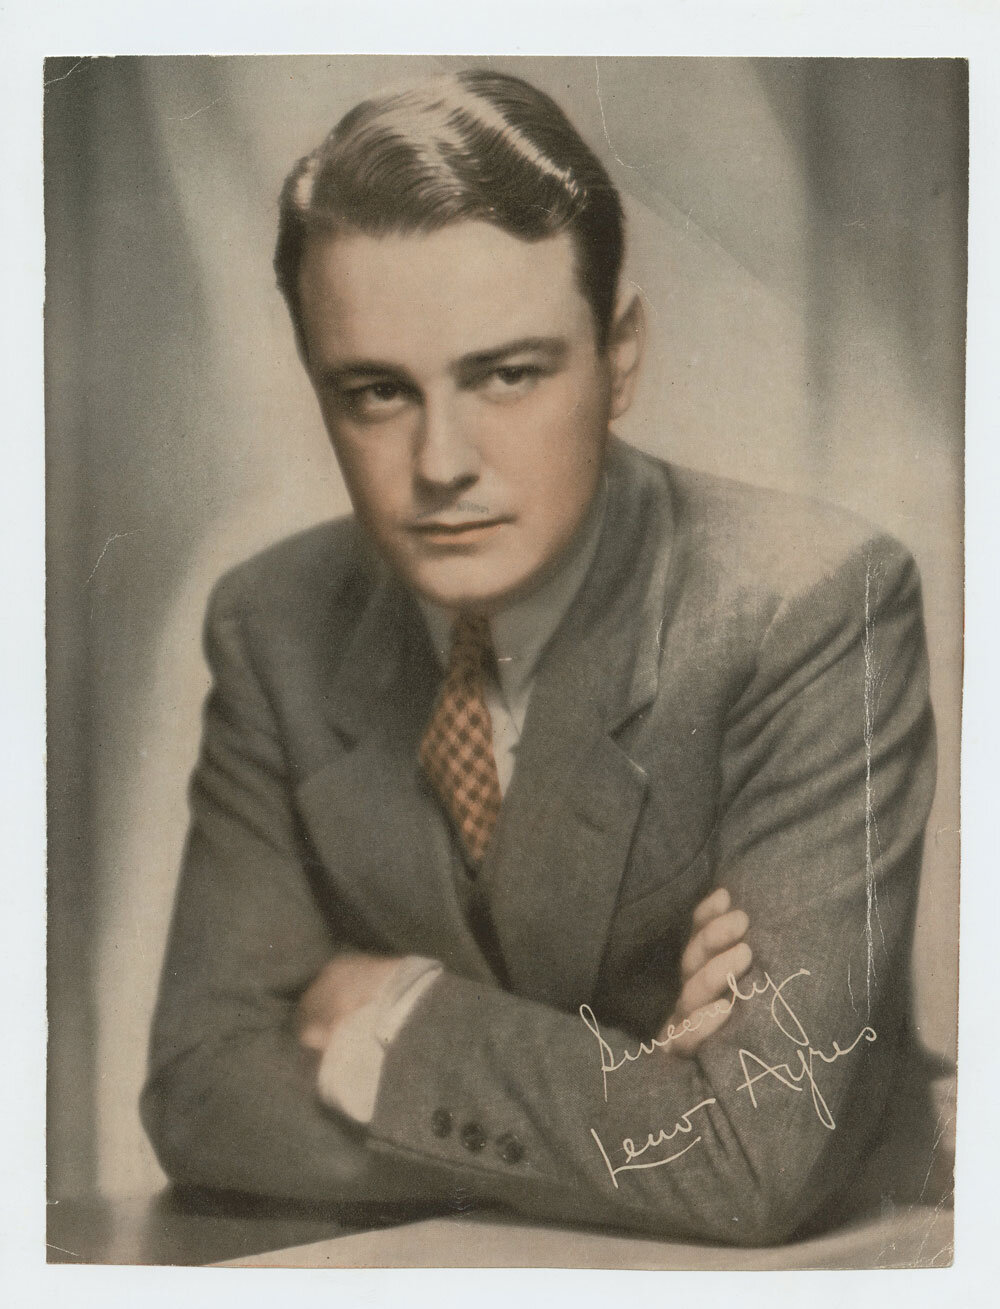 Lew Ayres Photo Print 1930s Publicity Portrait Original Vintage